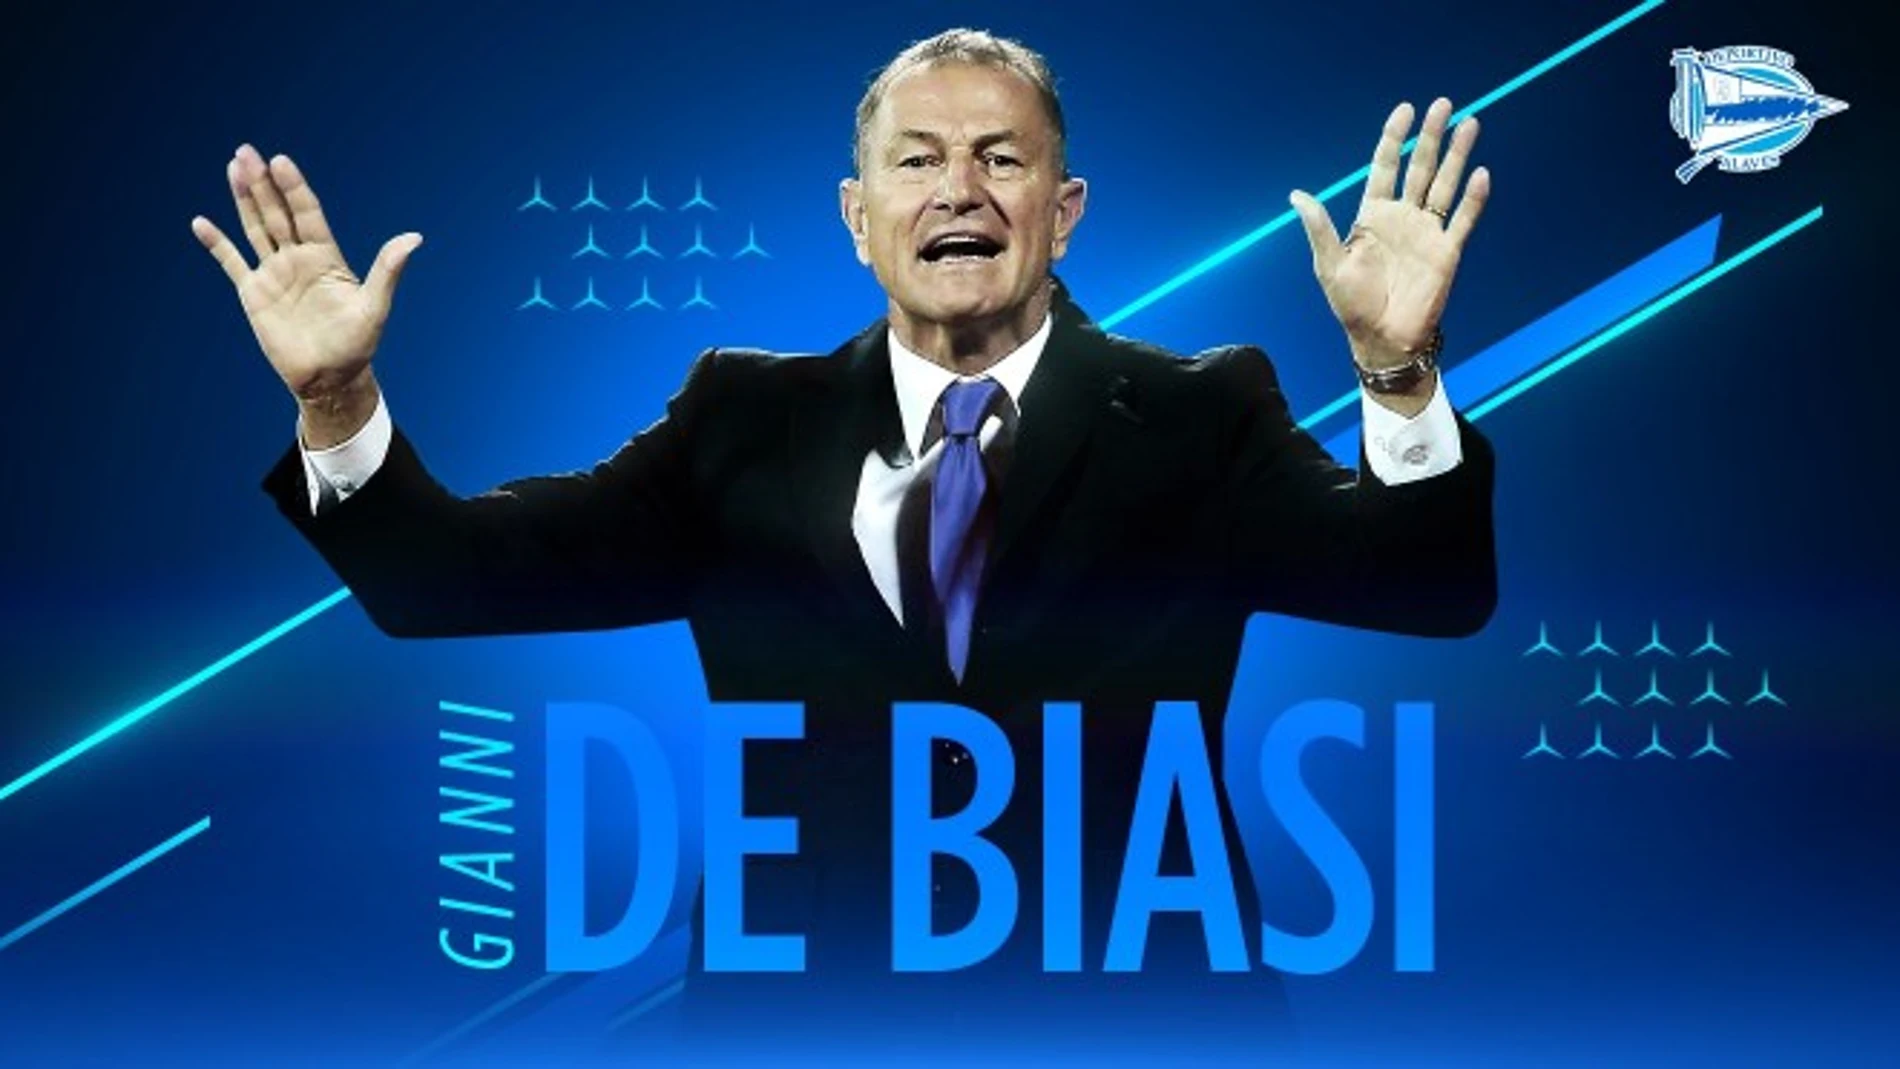 De Biasi, nuevo entrenador del Alavés